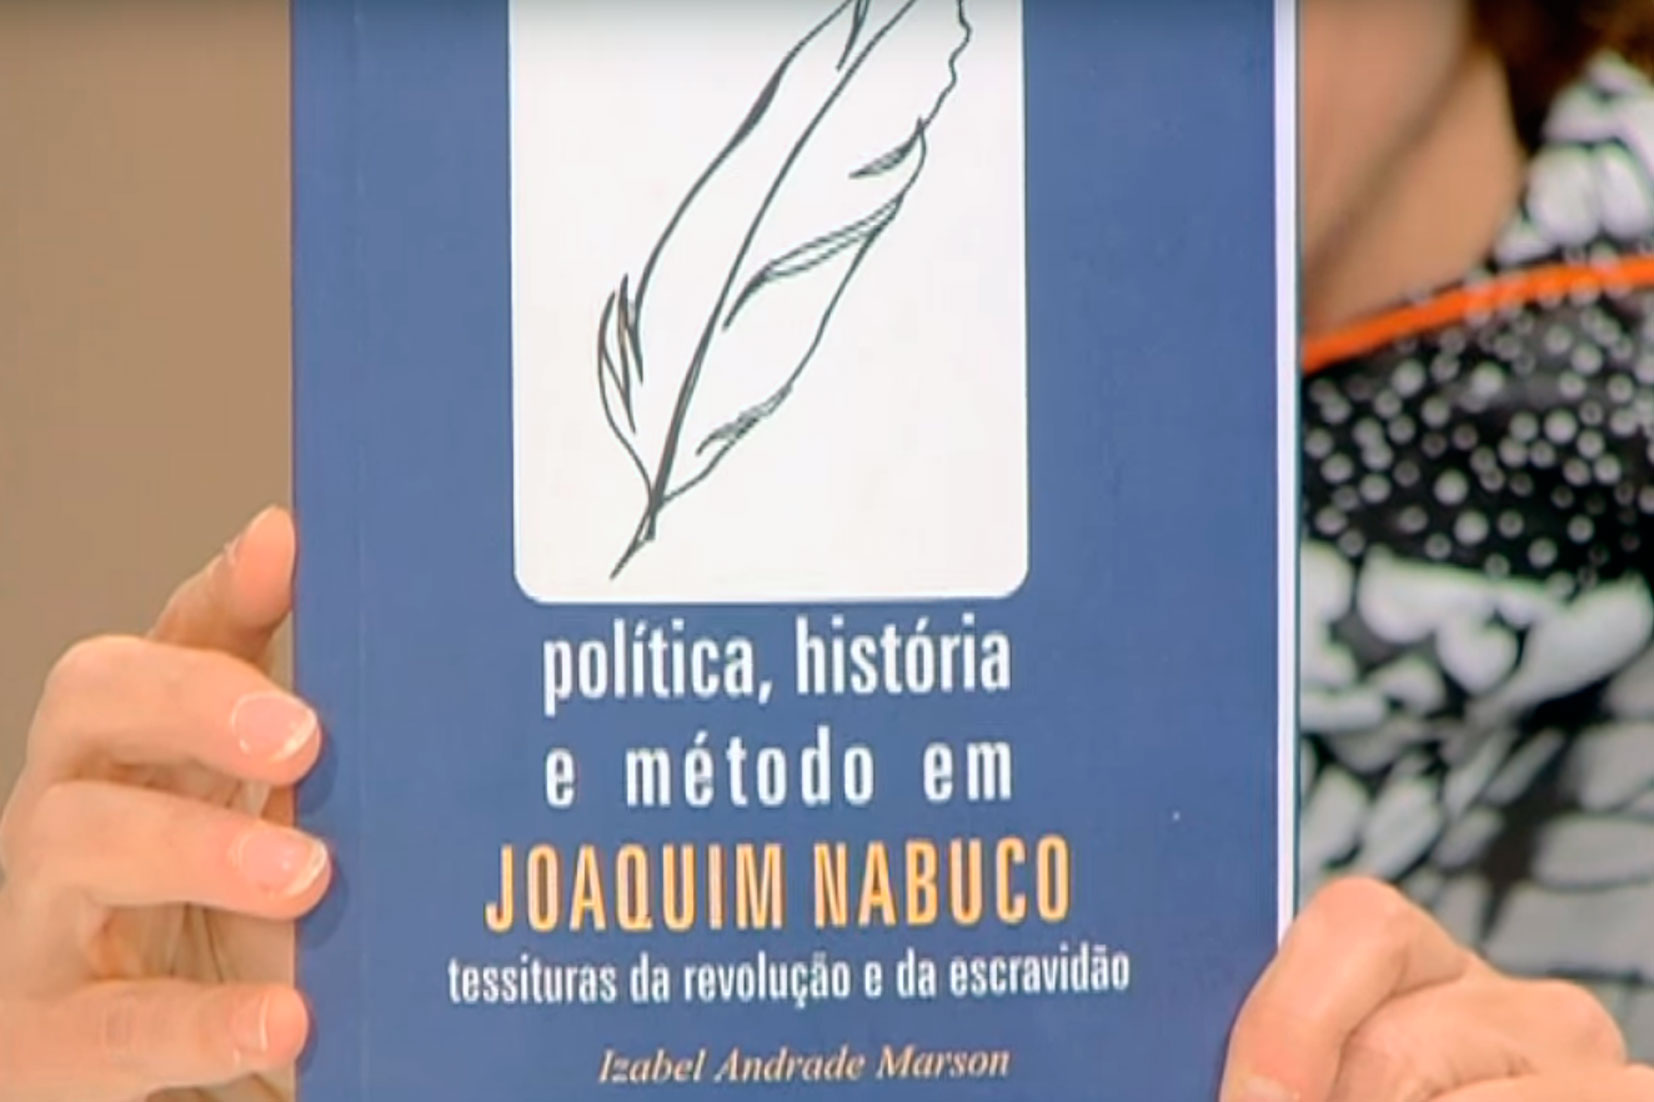 Joaquim Nabuco e a Revolução Praieira